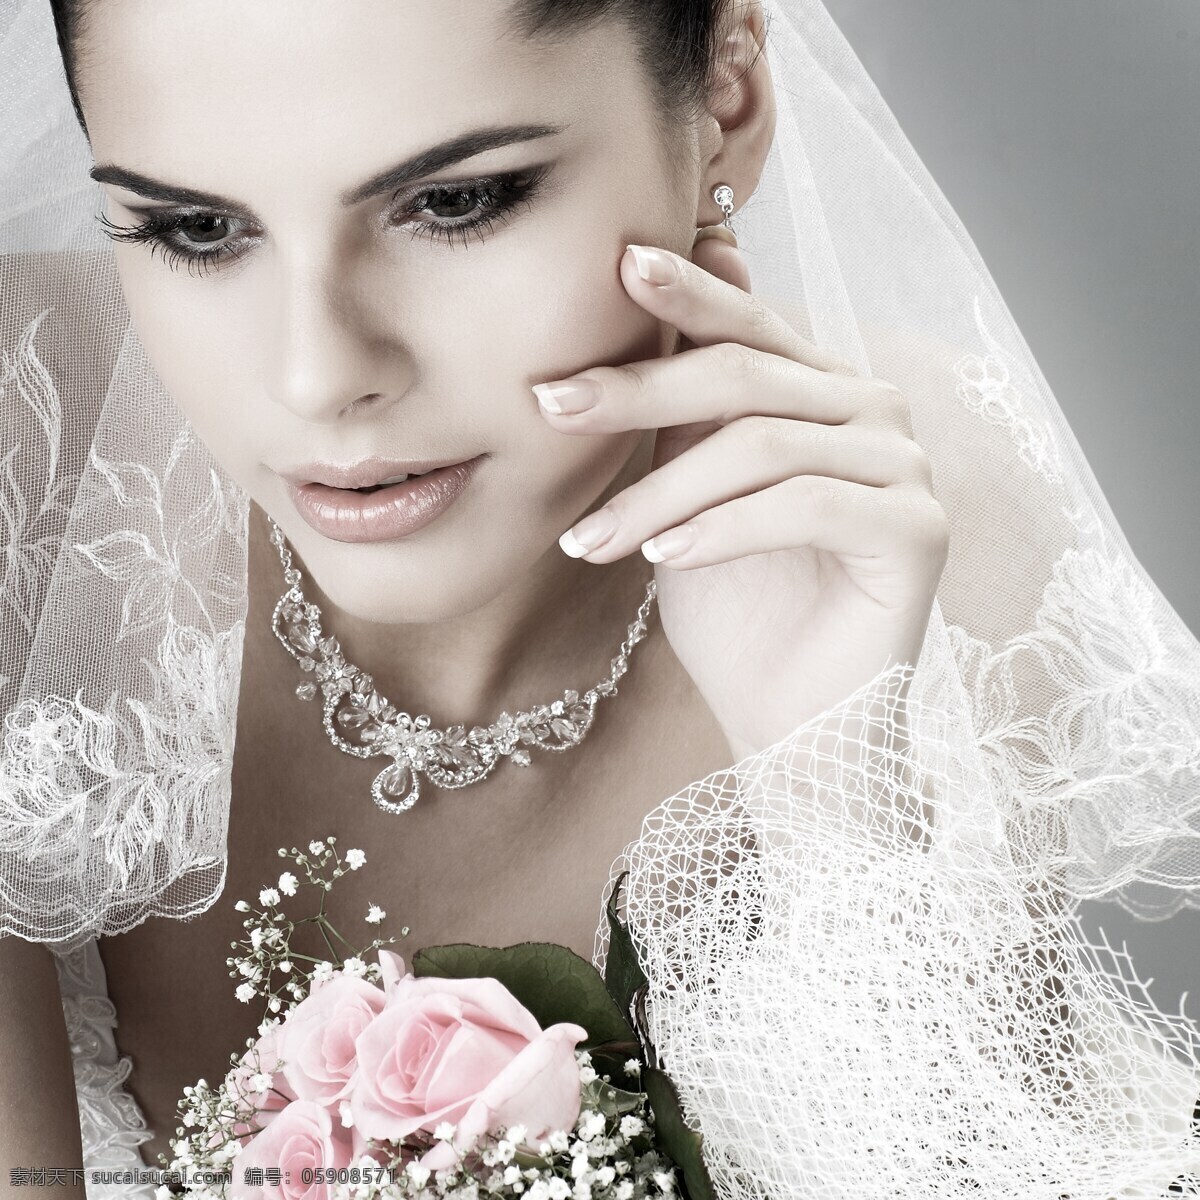 美丽 新娘 女人 外国女人 婚纱 鲜花 花朵 玫瑰花 情侣图片 人物图片